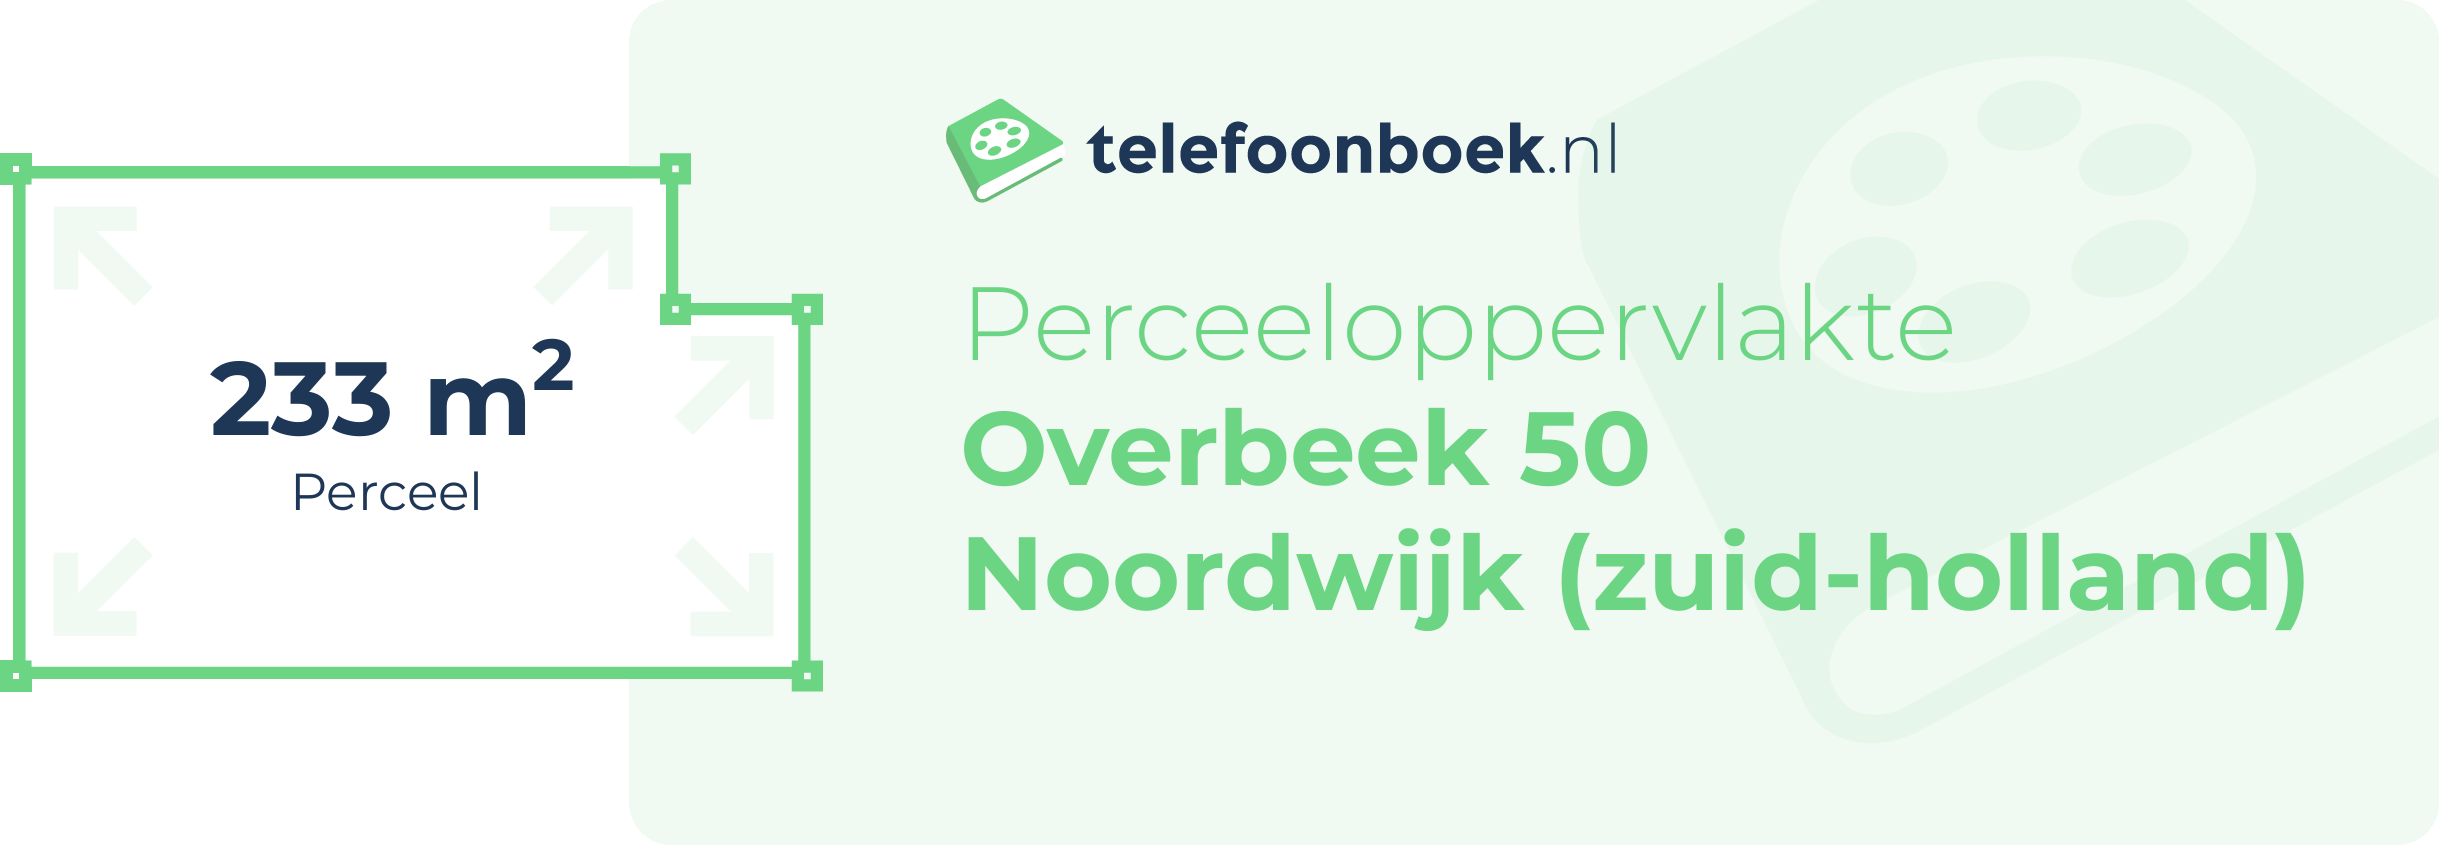 Perceeloppervlakte Overbeek 50 Noordwijk (Zuid-Holland)